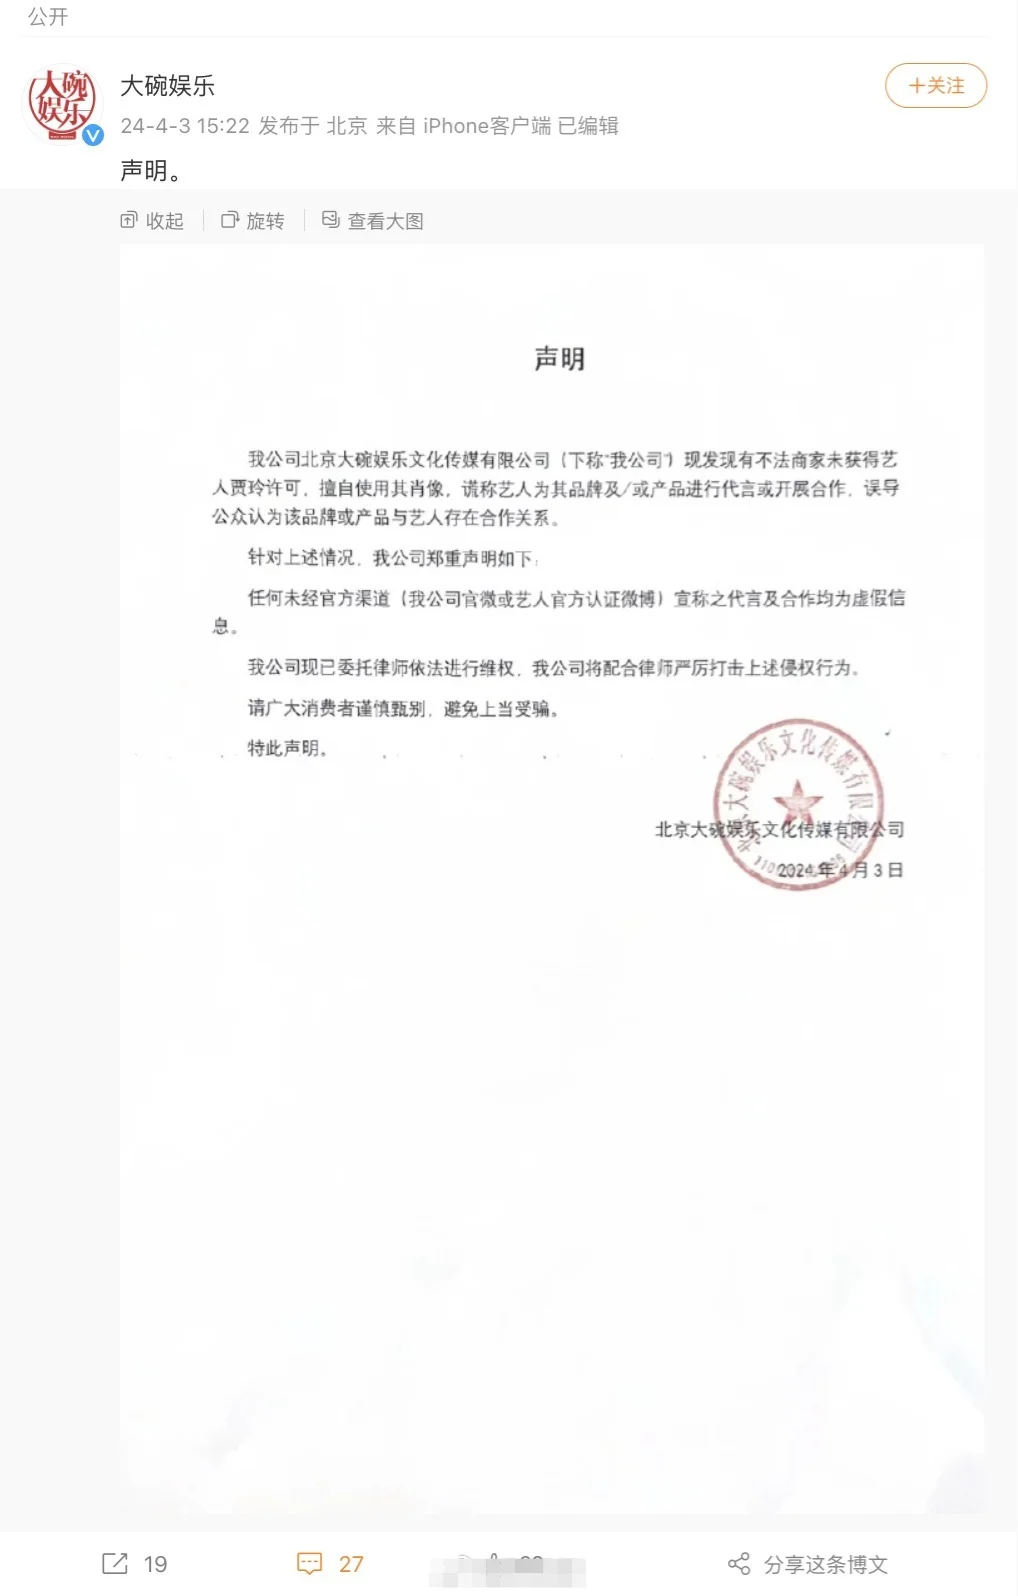 贾玲公司大碗娱乐发声明 谴责侵犯肖像权行为